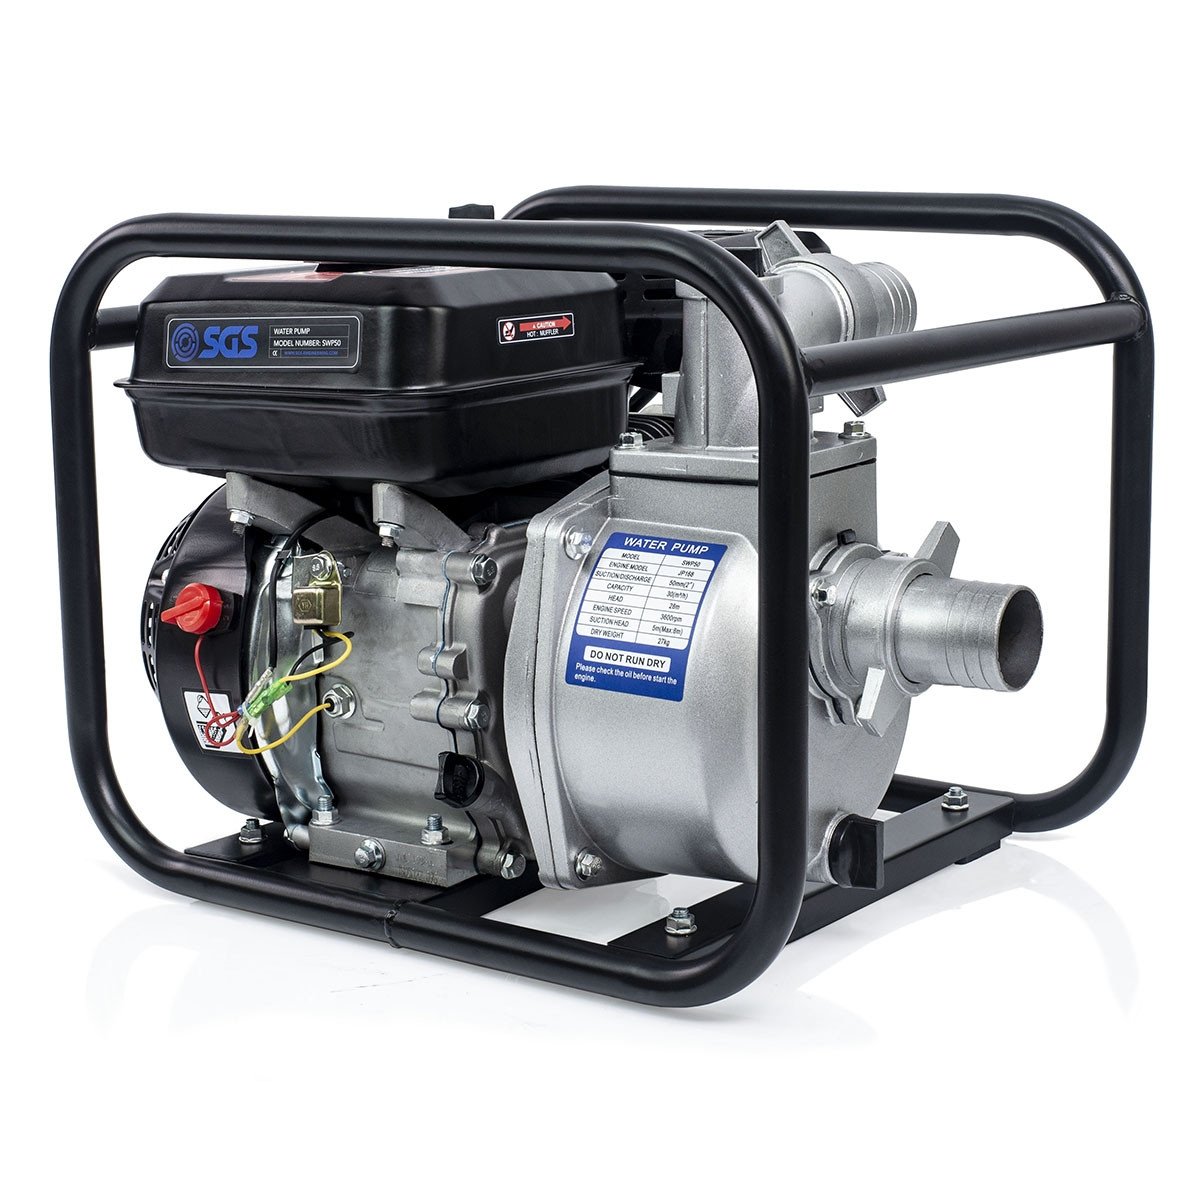 SGS 2英寸汽油水泵|5.5 hp 500 lpm